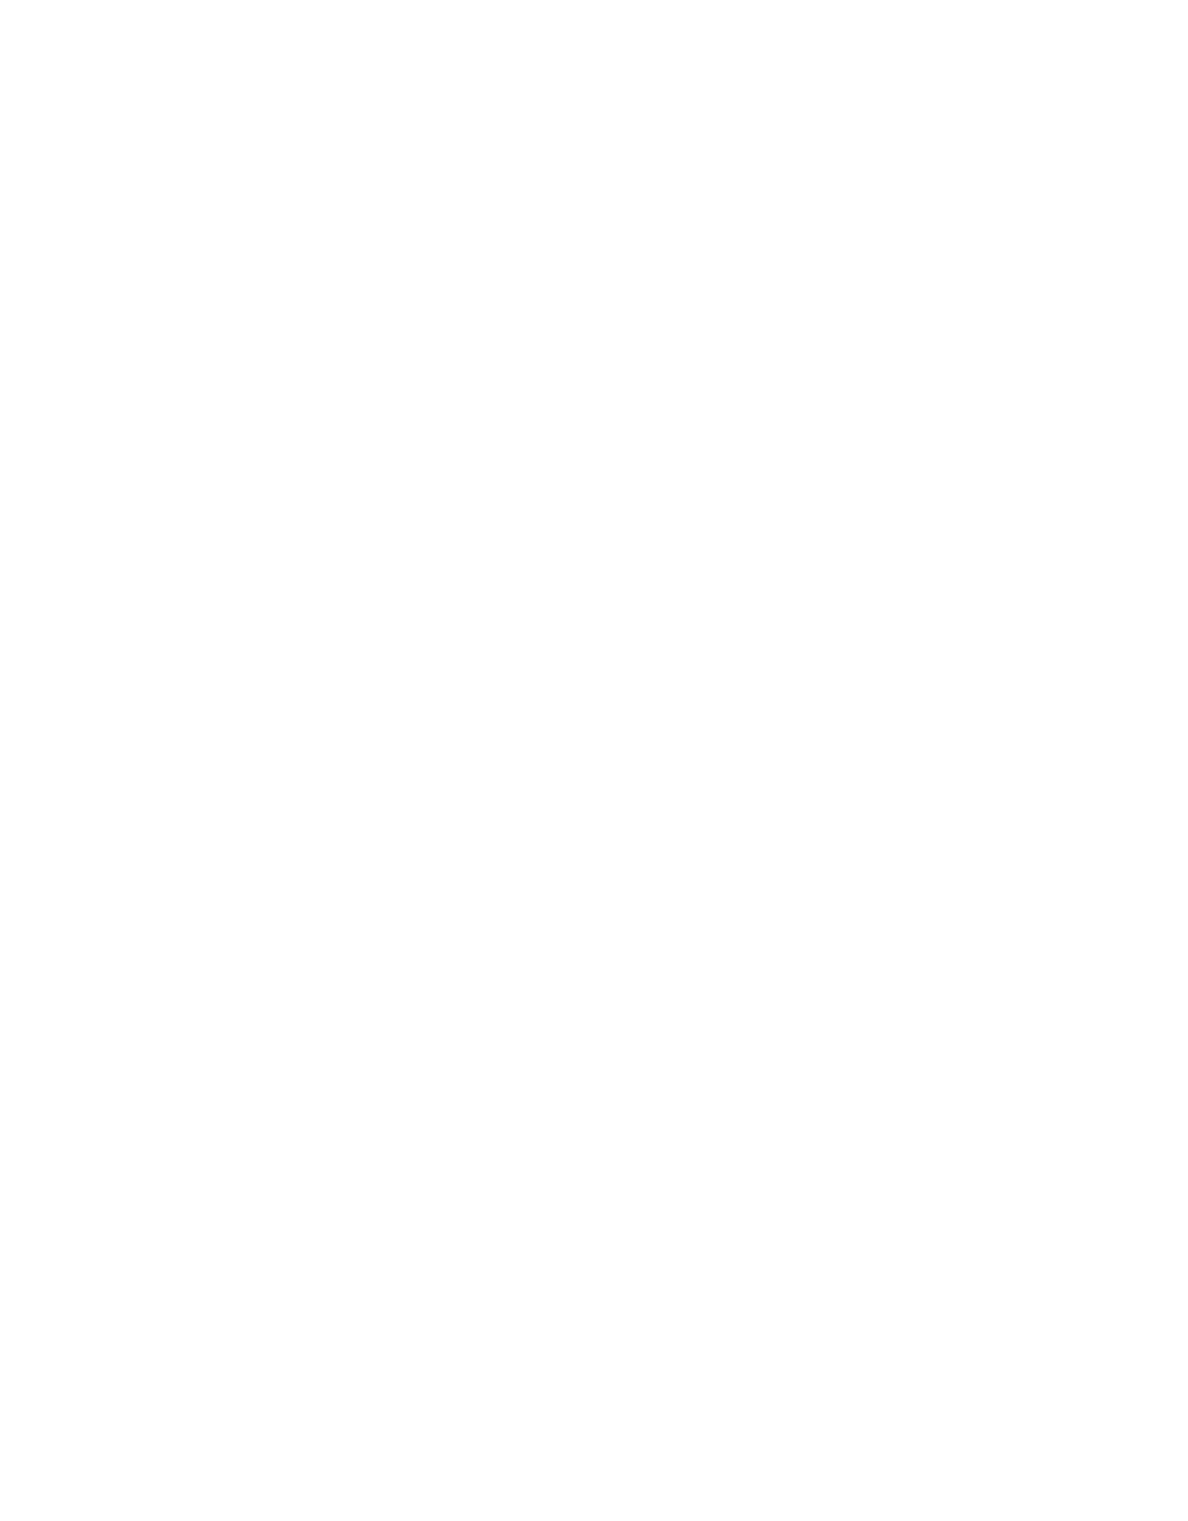 Arctic Paper logo pour fonds sombres (PNG transparent)